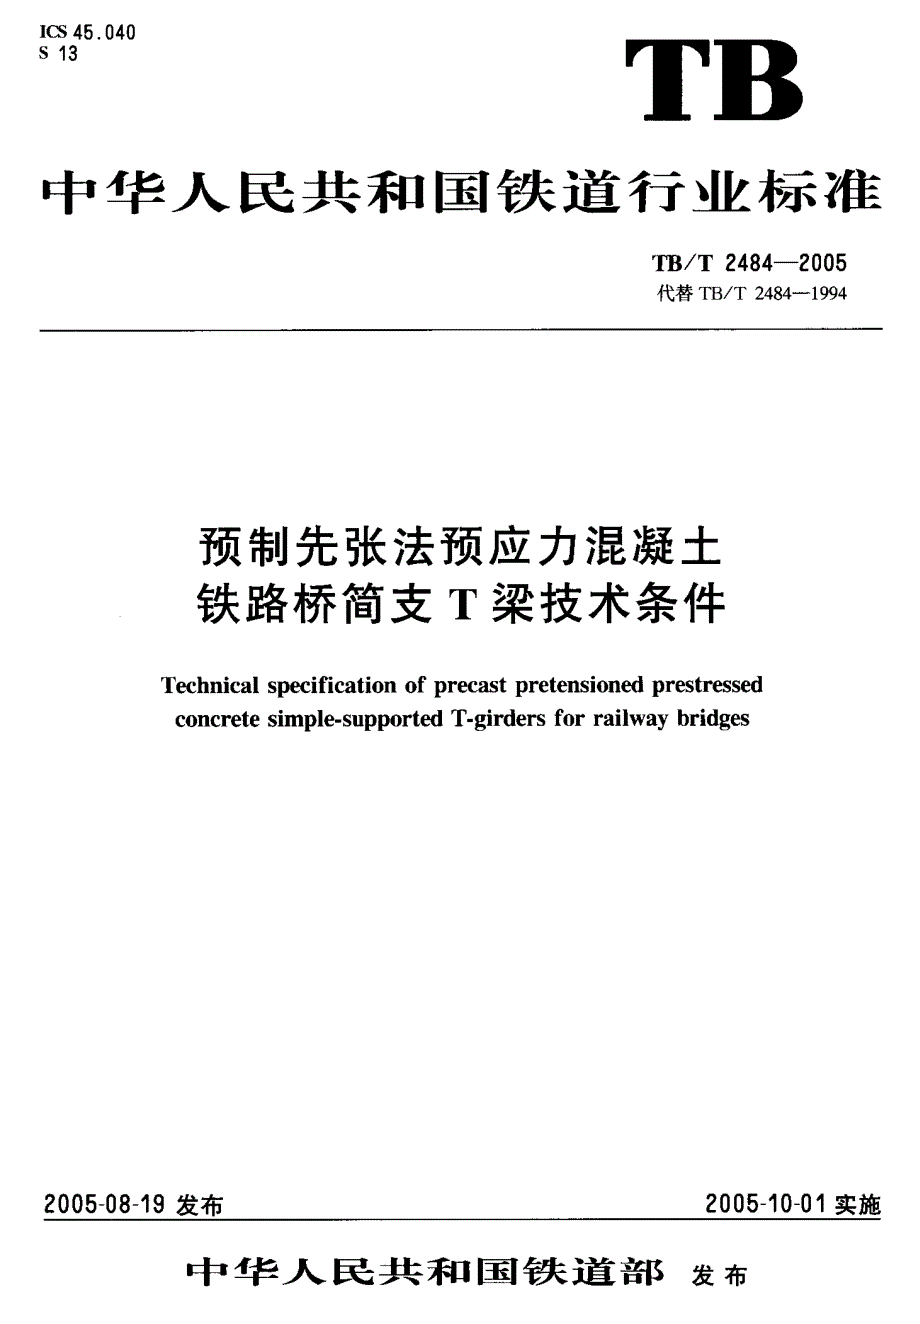 新TB∕T 2484-2005 预制先张法预应力混凝土 铁路桥简支 T梁技术条件_第1页